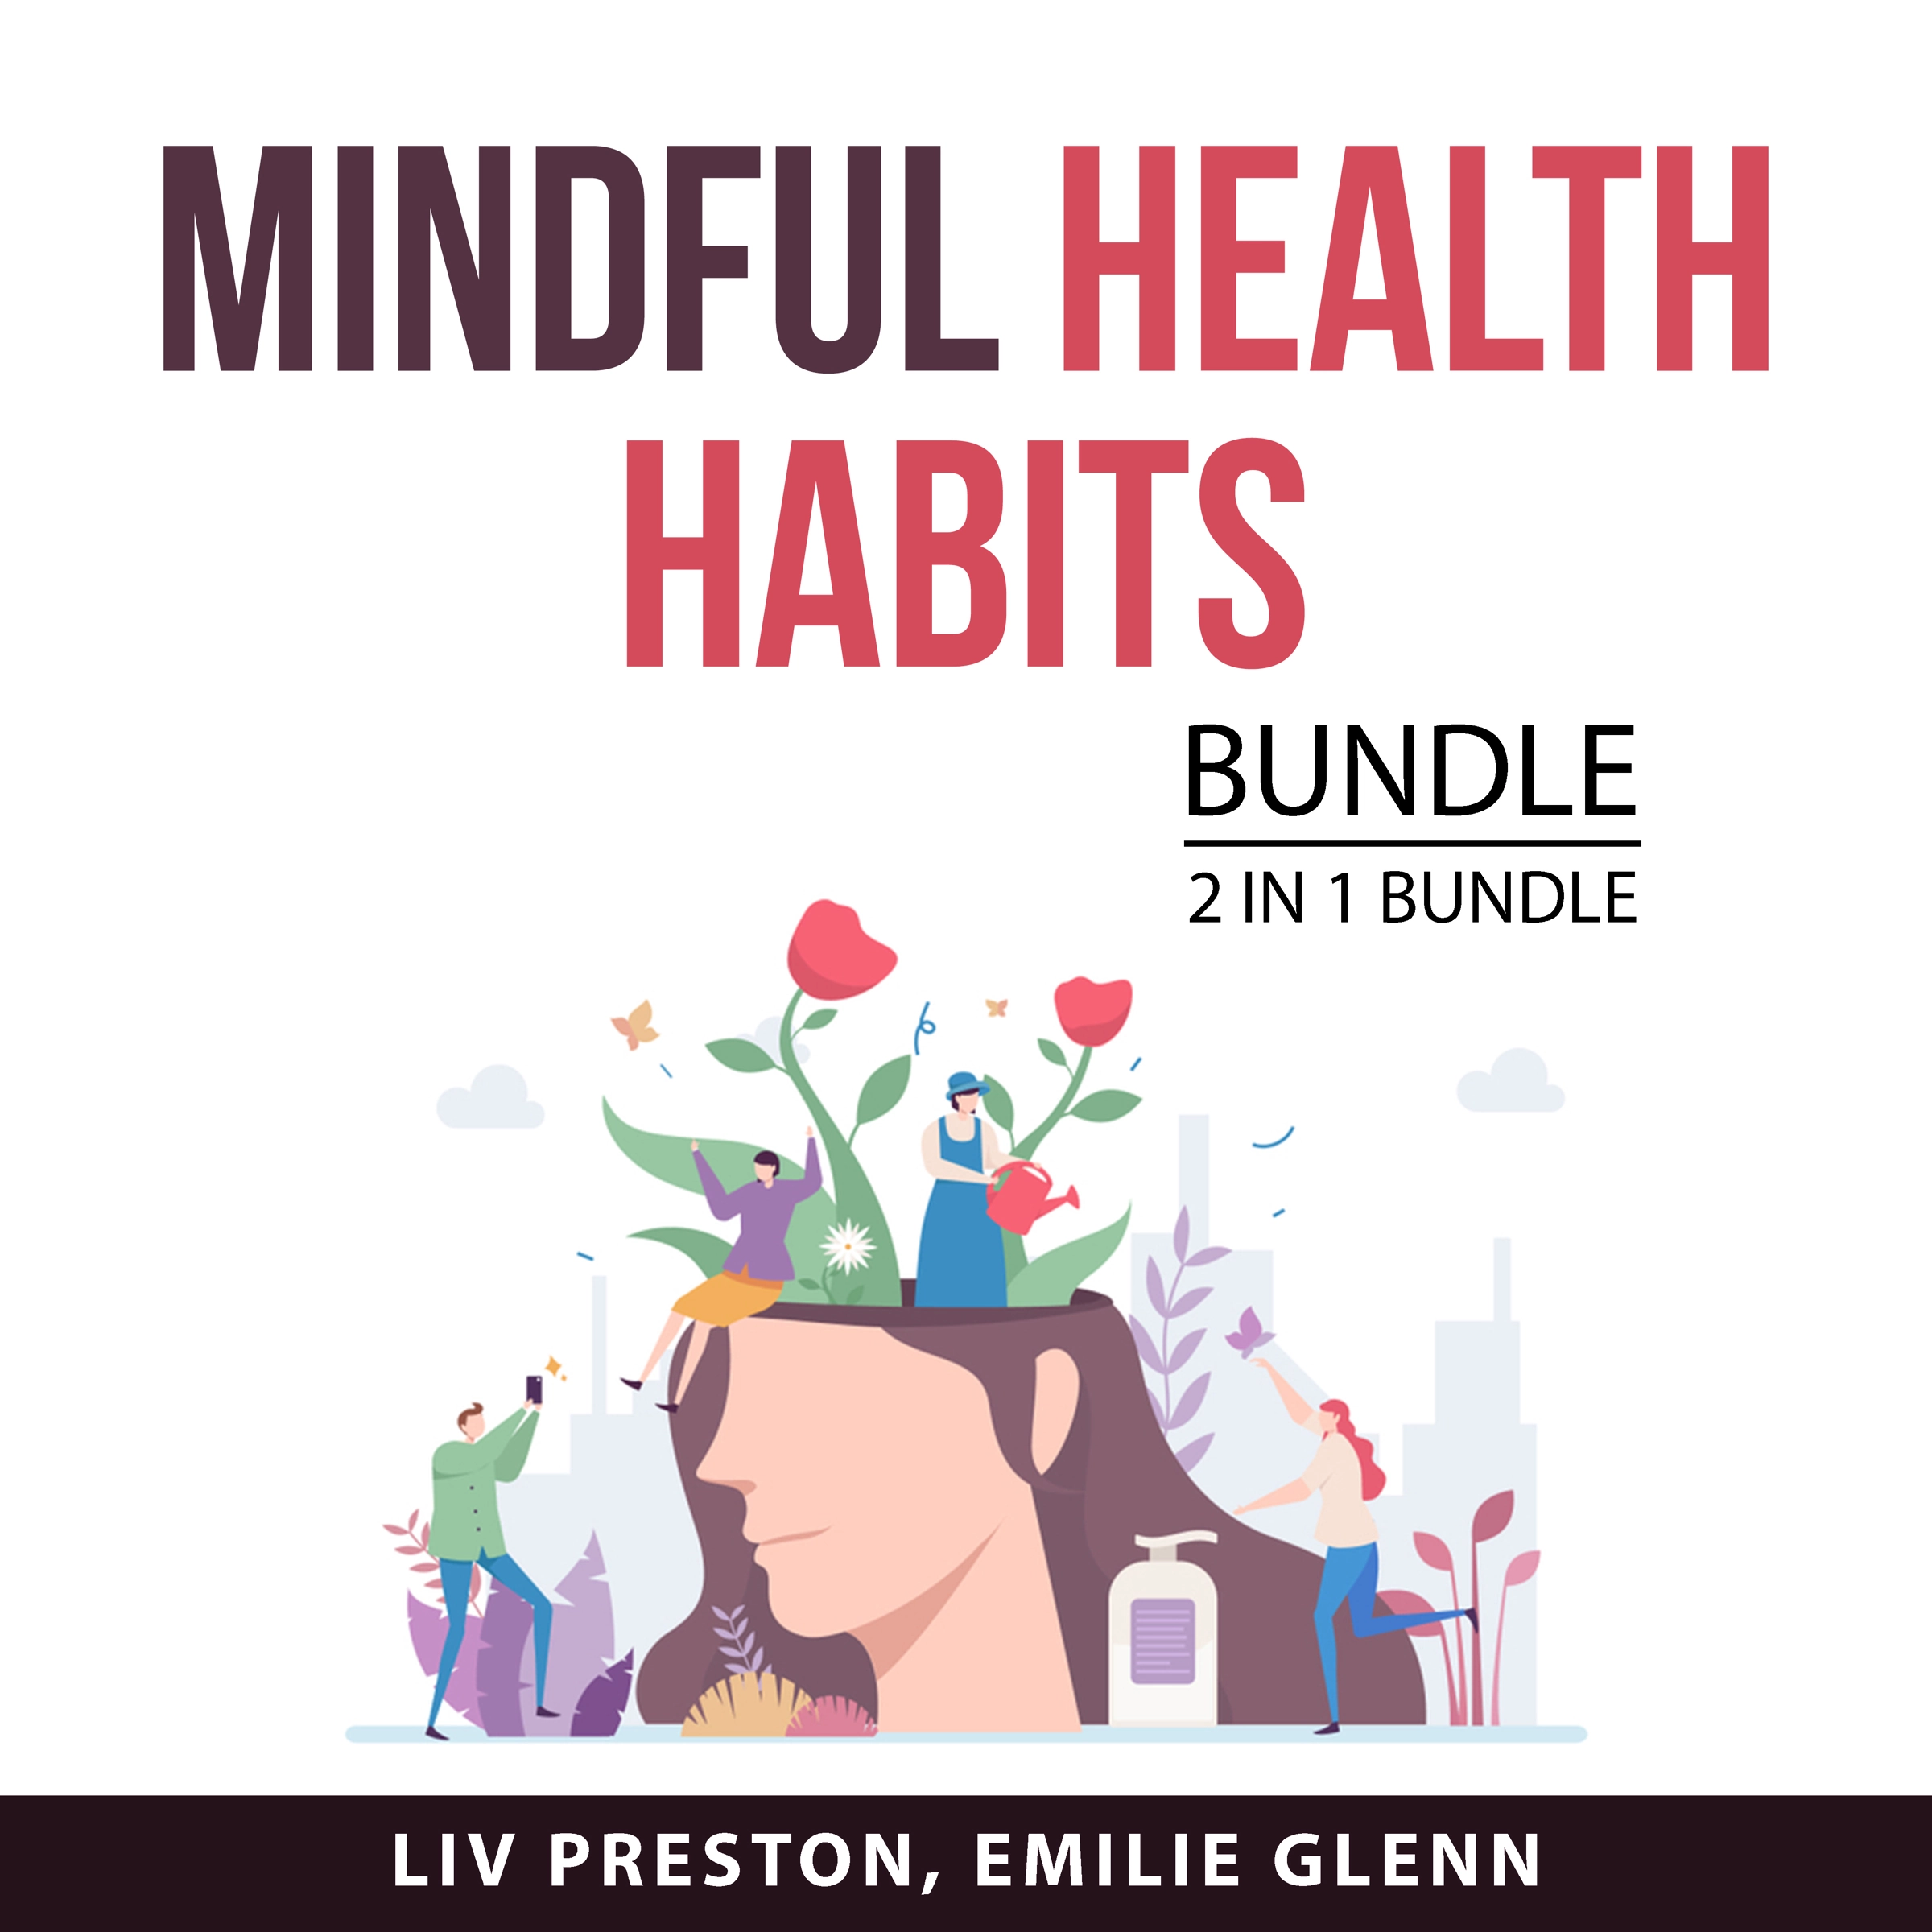 Mindful Health Habits, 2 in 1 Bundle Audiobook by Emilie Glenn